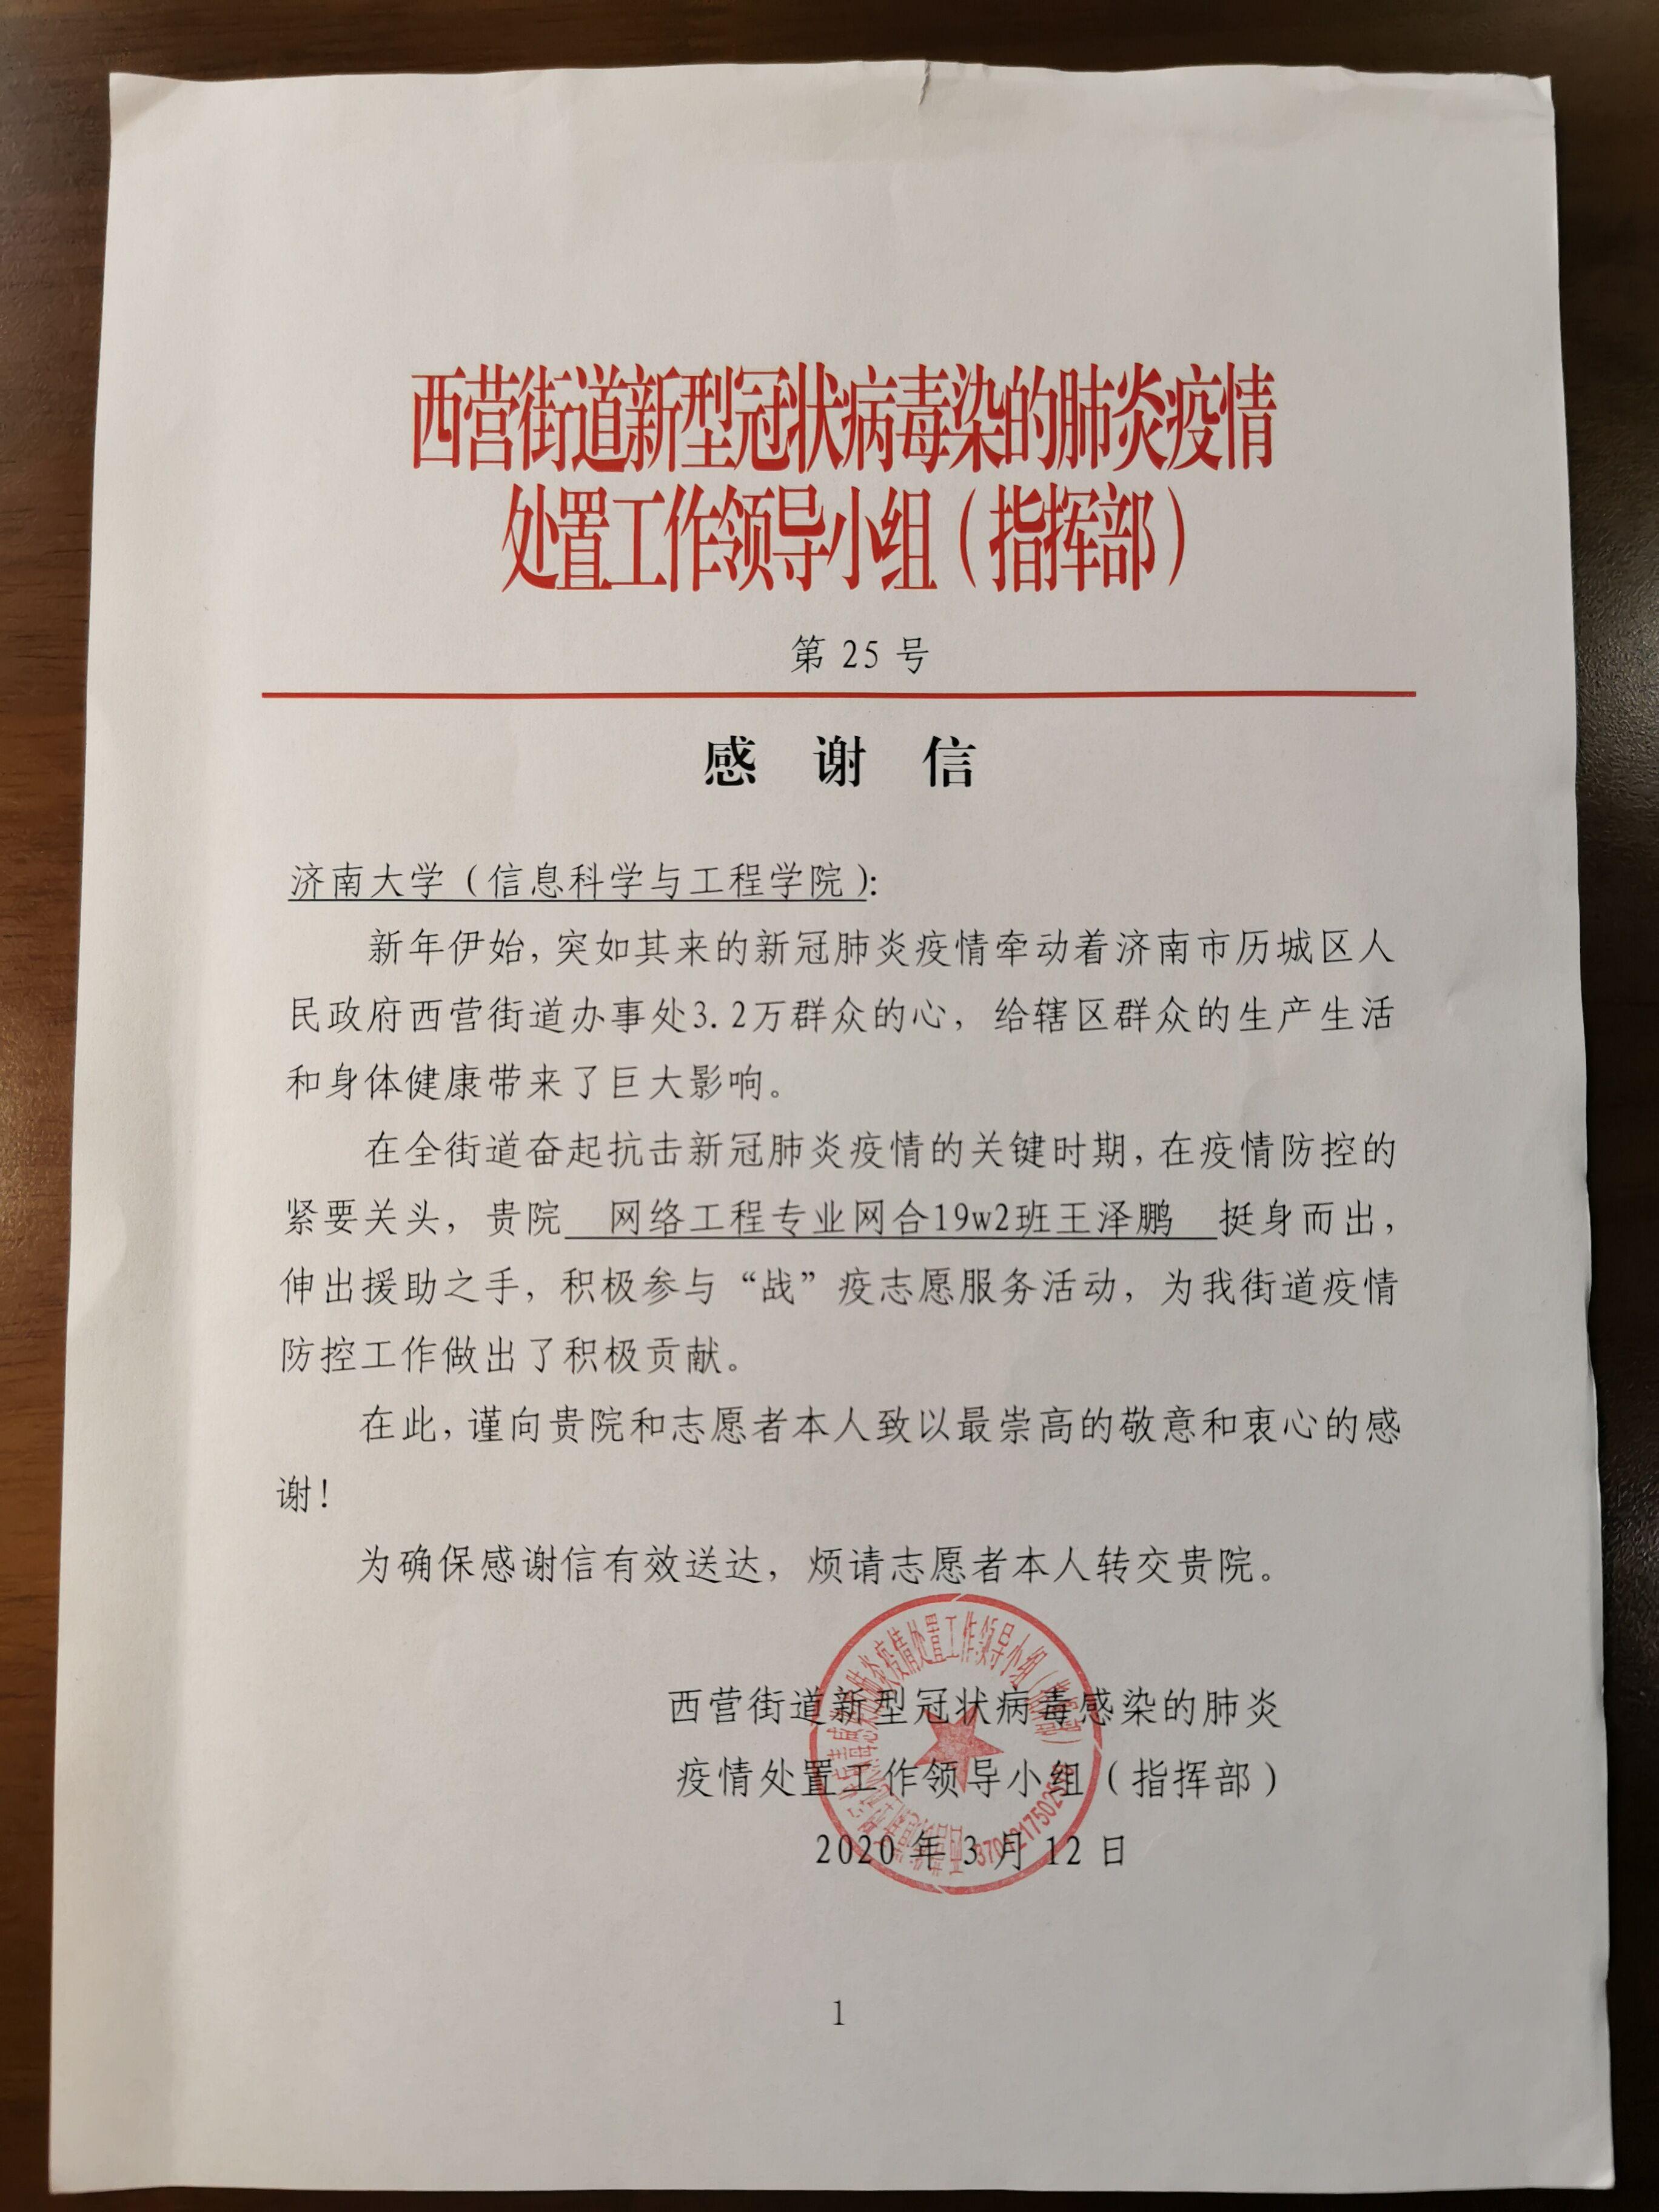 致会员单位的一封慰问信-浙江省矿业联合会